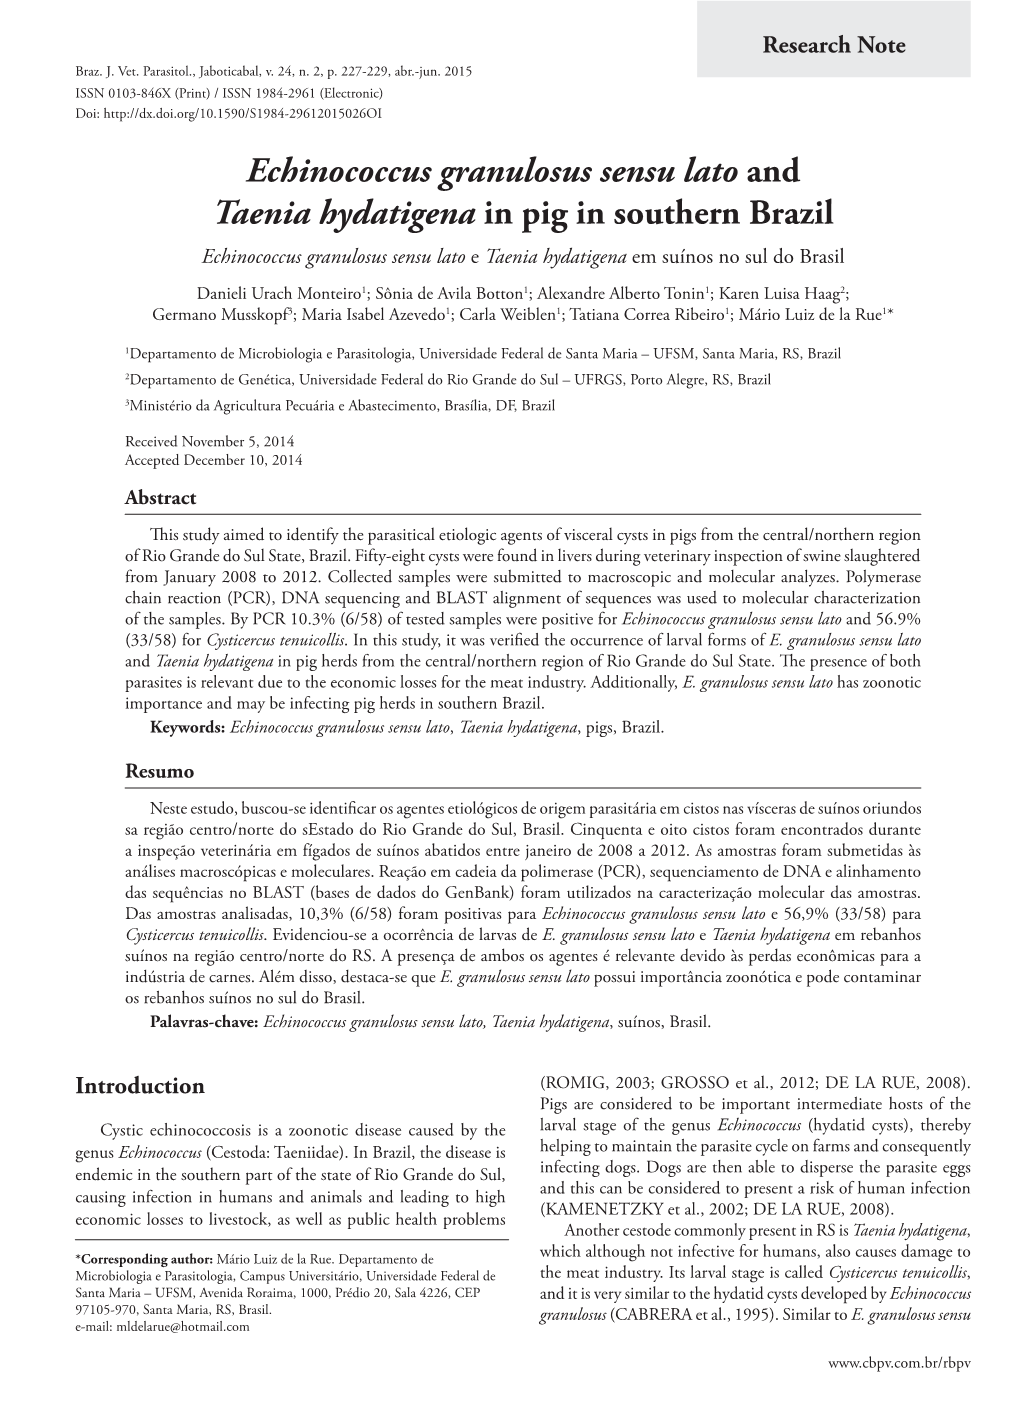 Echinococcus Granulosus Sensu Lato and Taenia Hydatigena in Pig in Southern Brazil